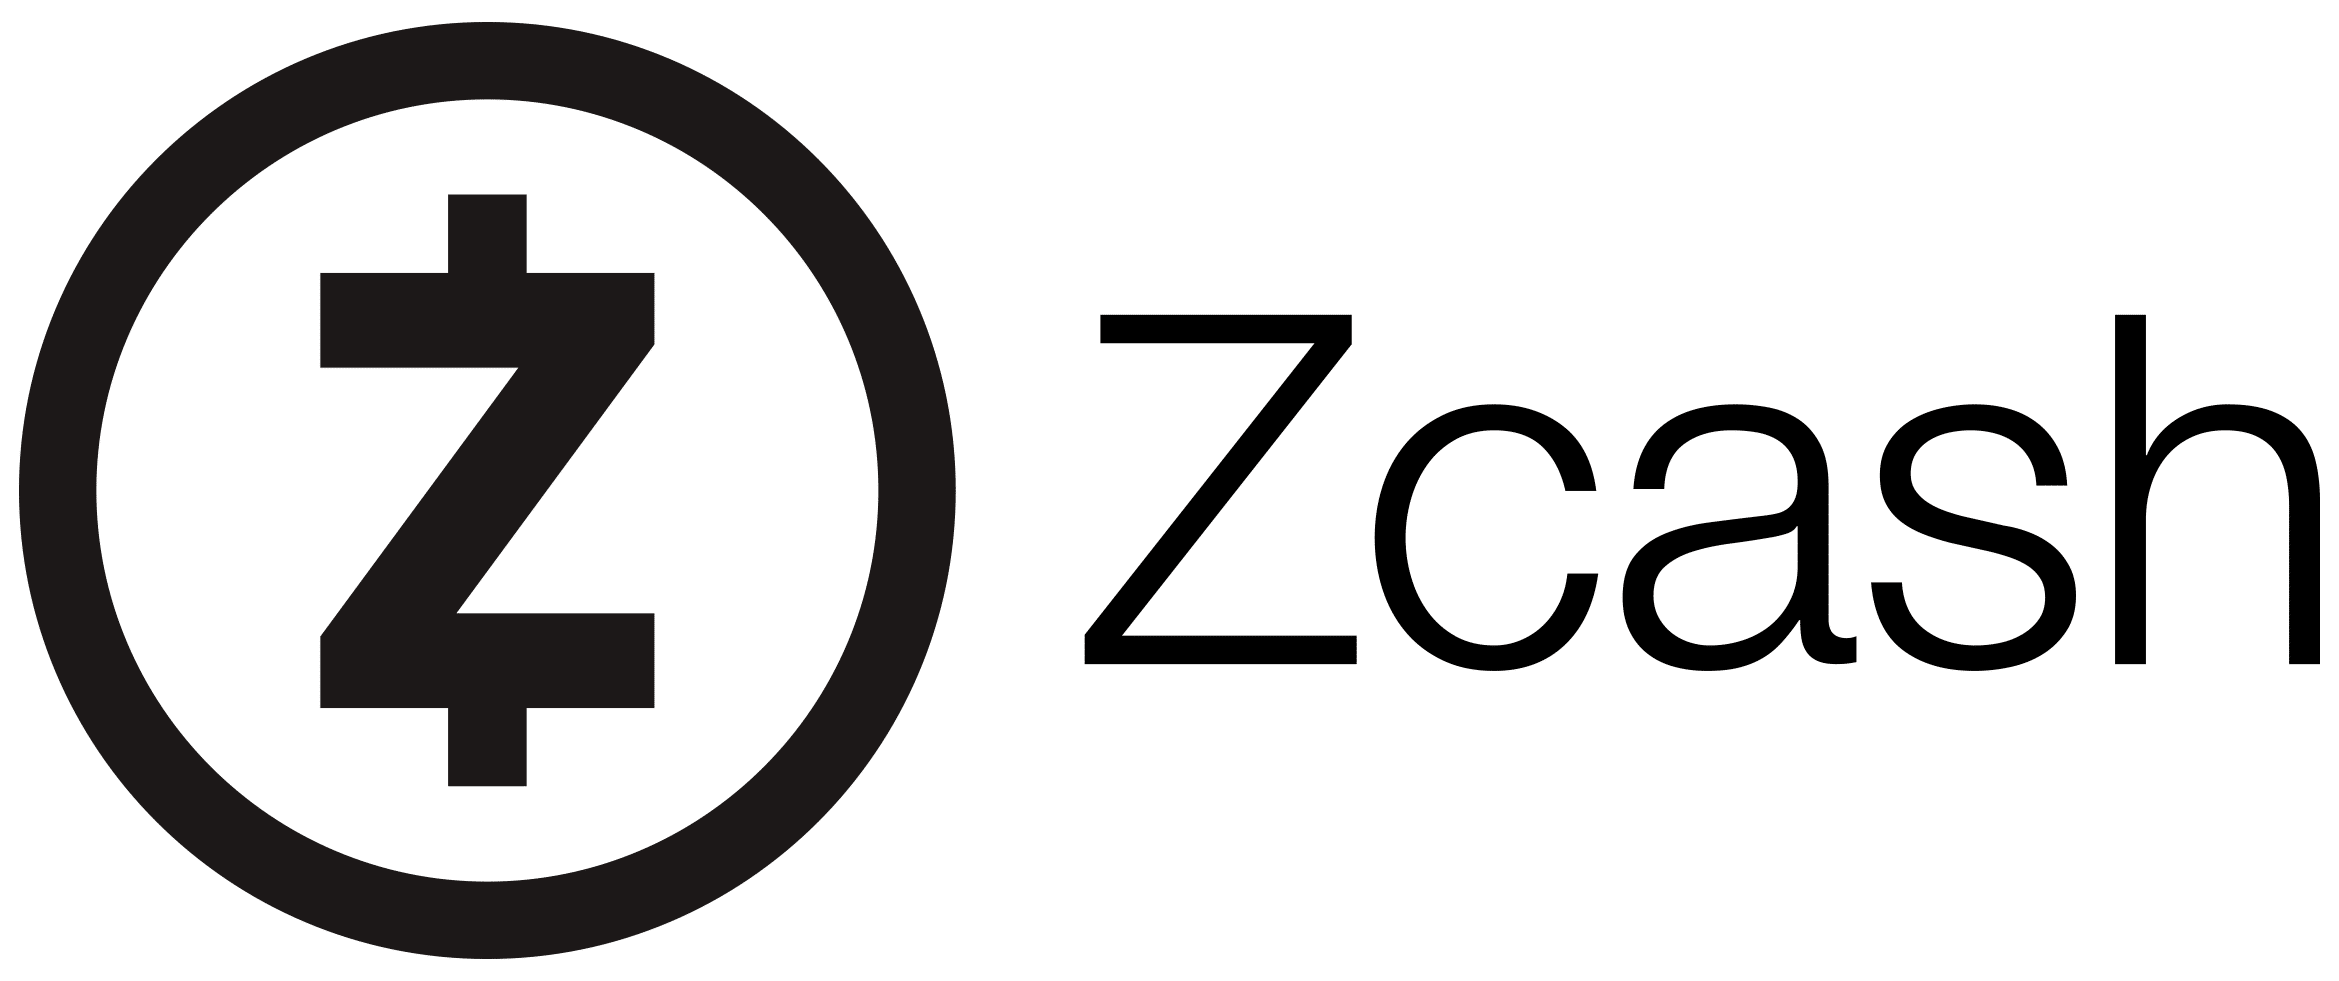 Zcash Media Kit.